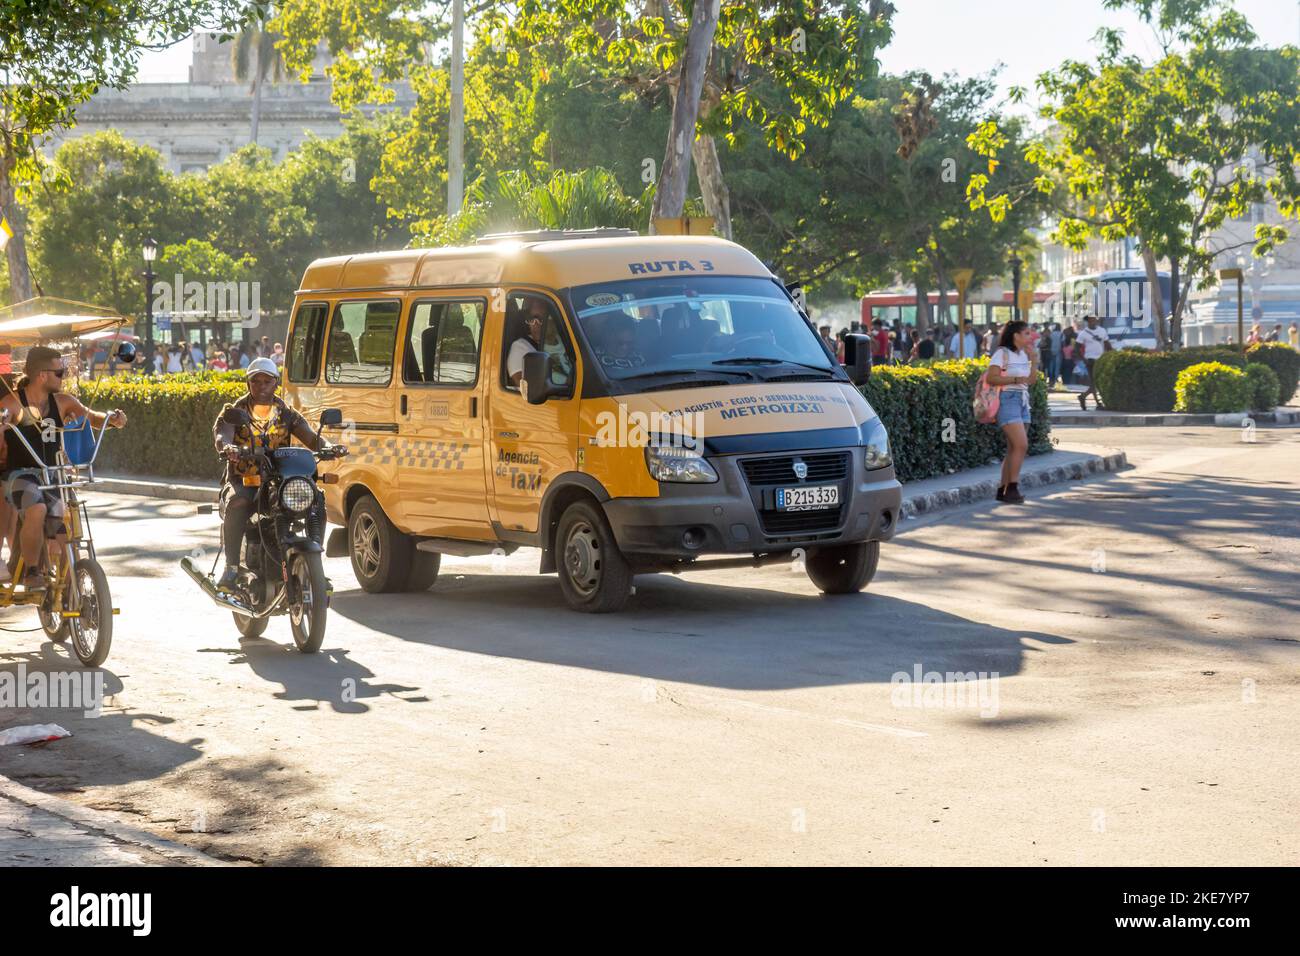 Una van Metrotaxi Lada conduce en una intersección de la ciudad donde una motocicleta y un bicitaxi también están en movimiento. Foto de stock